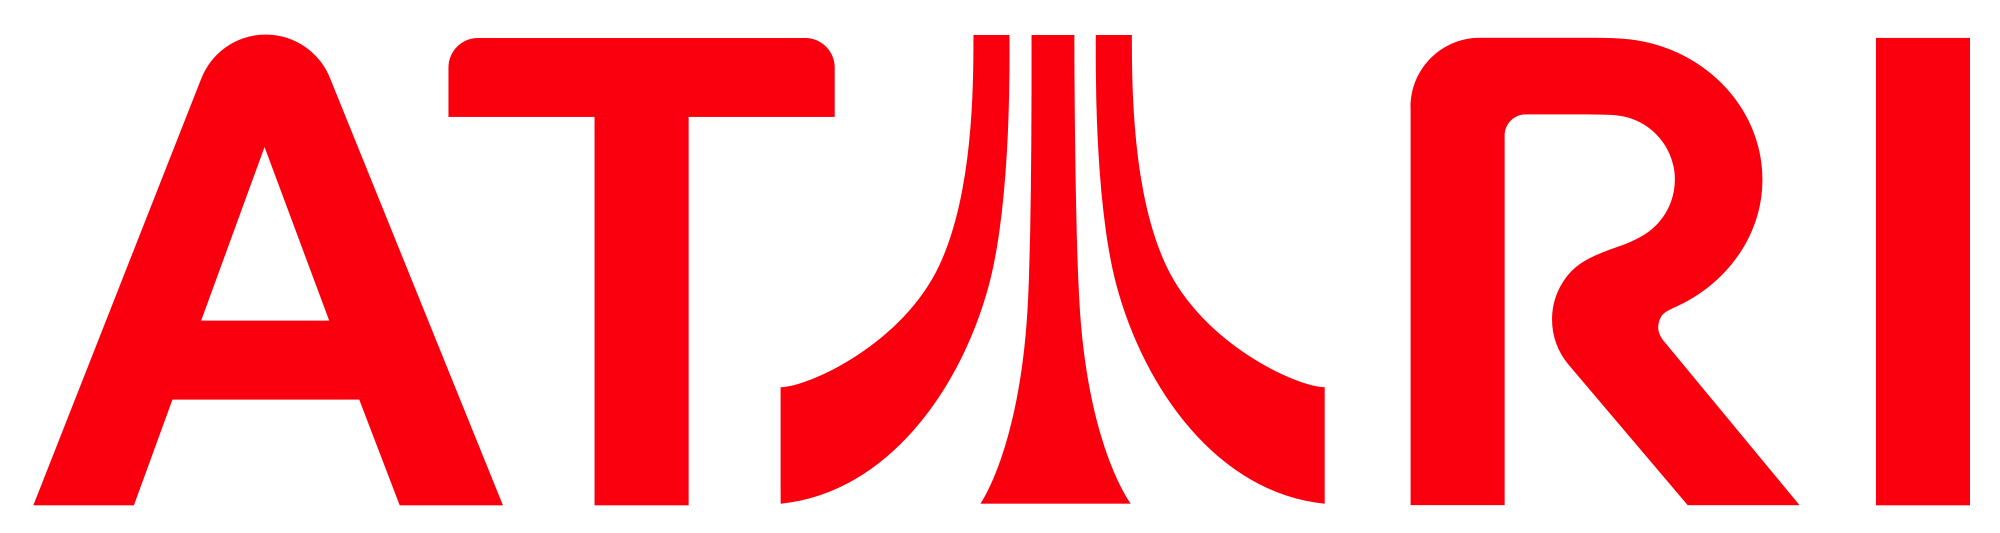 File:Atari Games logo.png